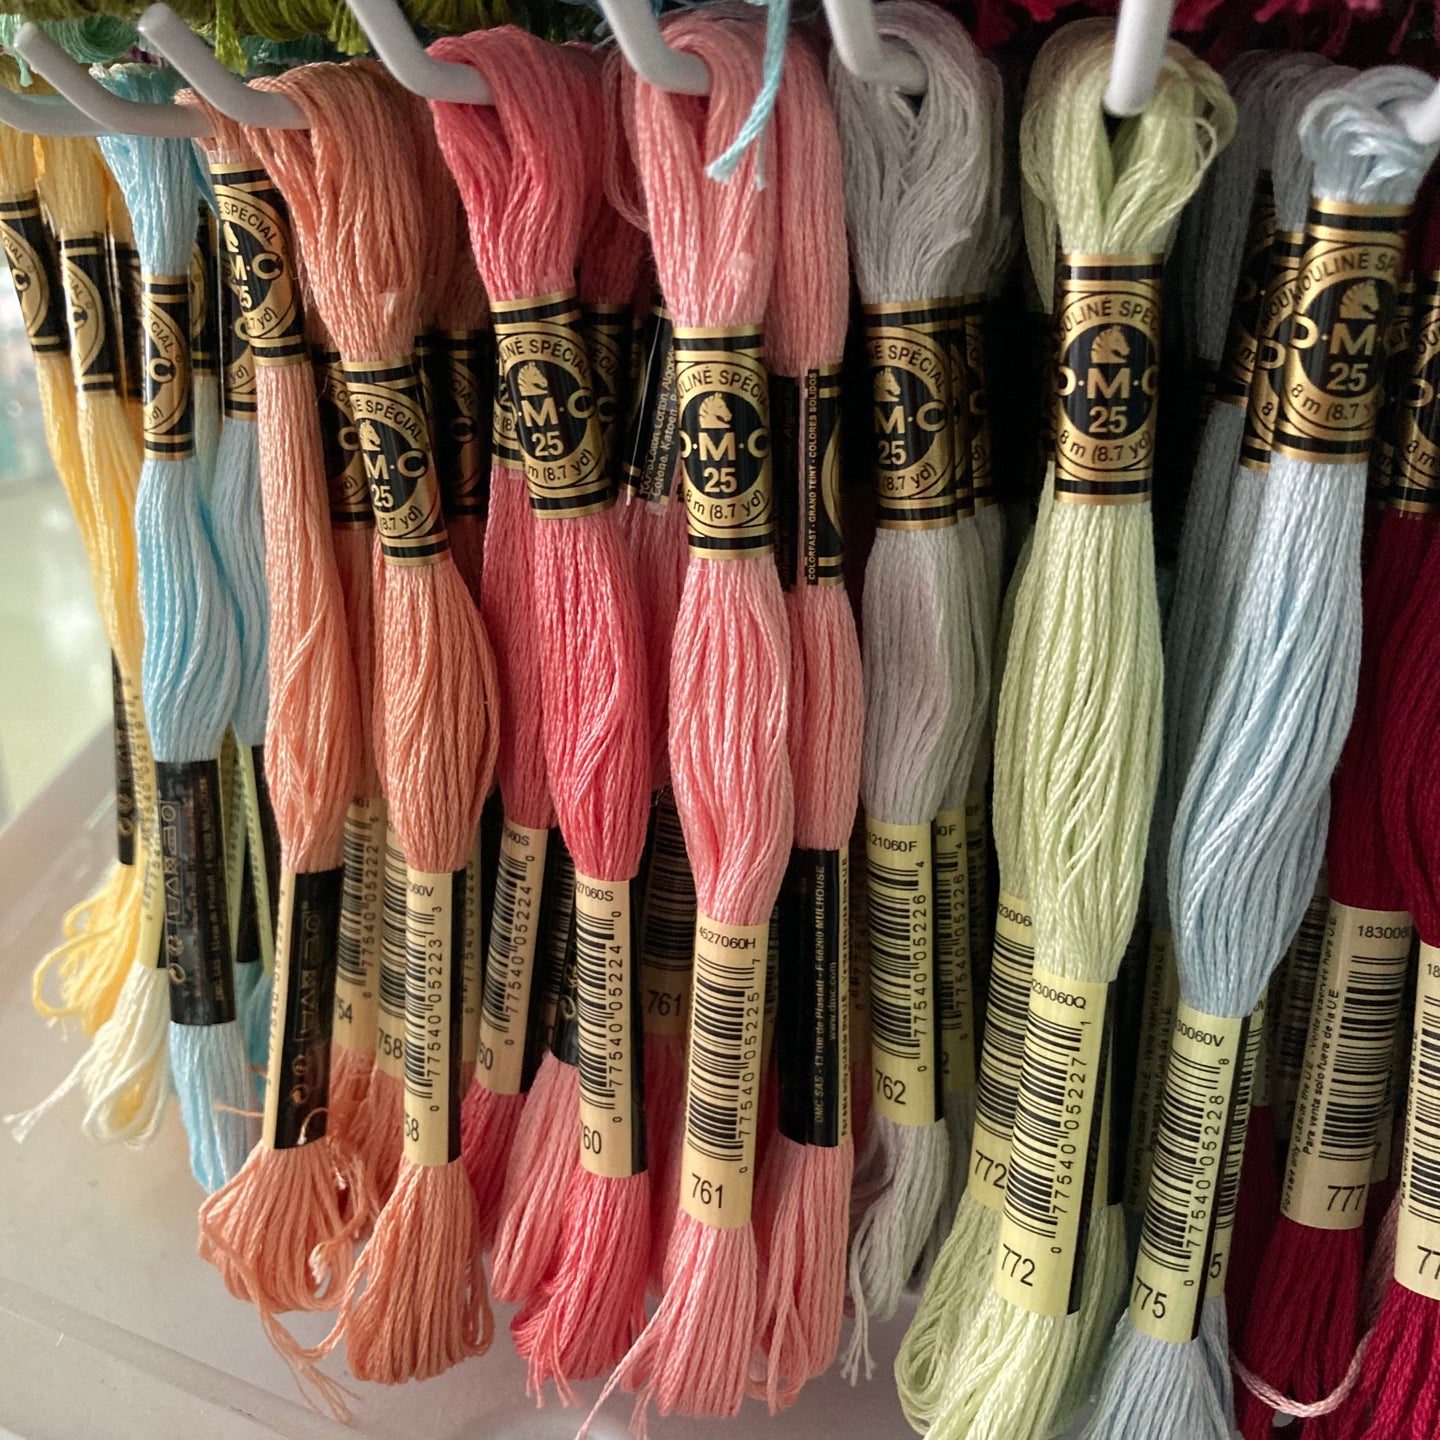 Entrelanas Sala de Tejido - Tienda online: lanas, agujas y accesorios